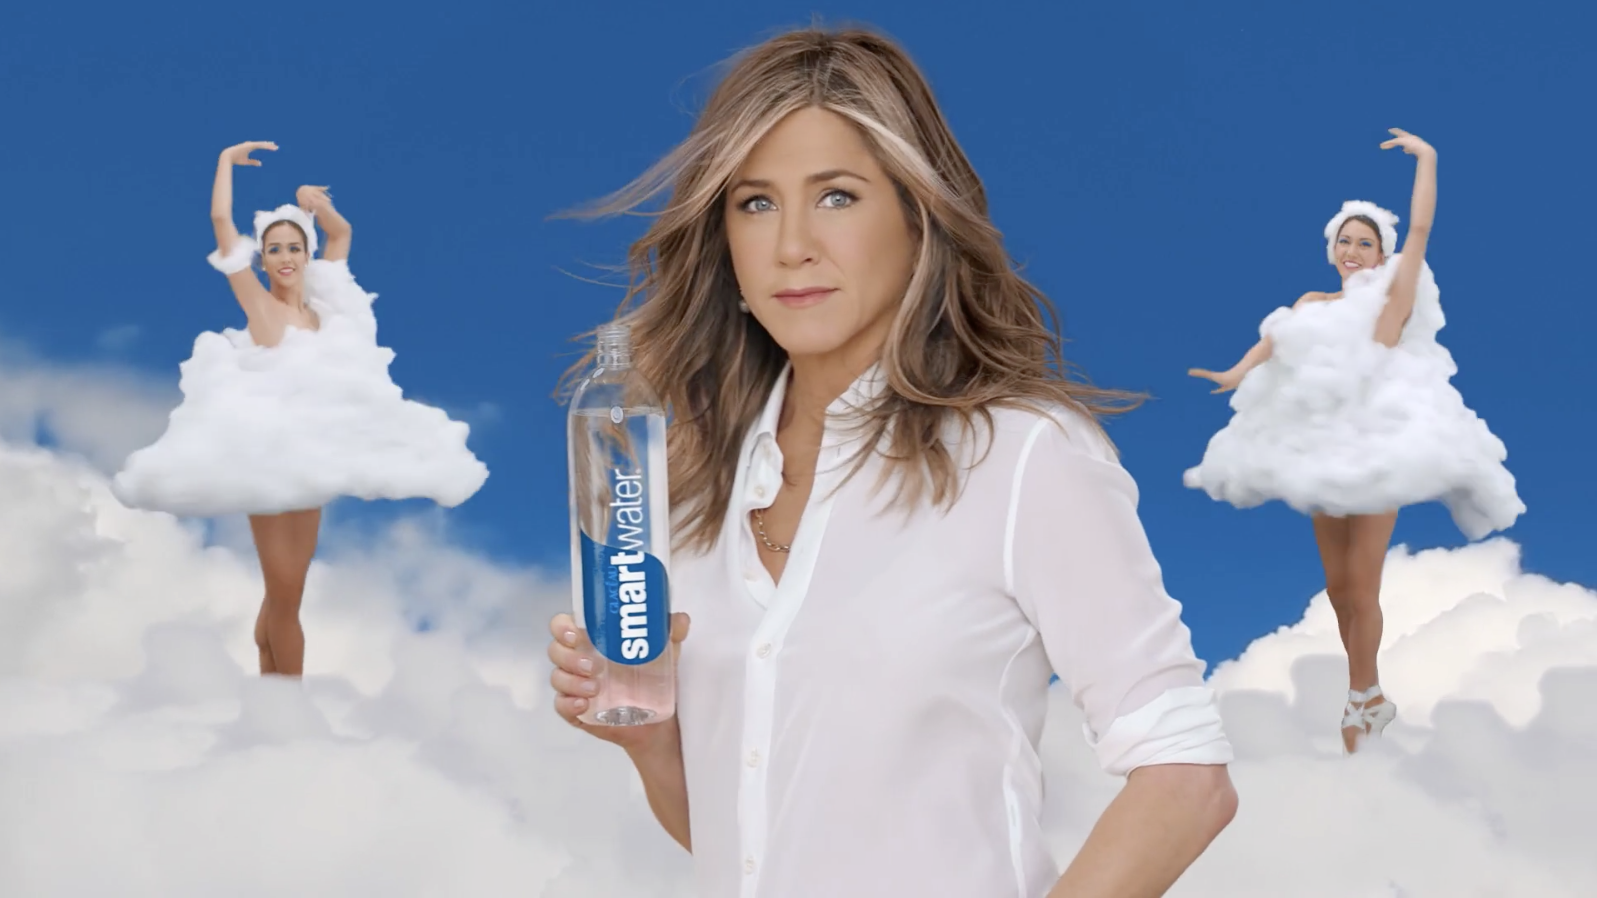 Девочка снимающаяся в рекламе. Женский образ в рекламе. Реклама воды.